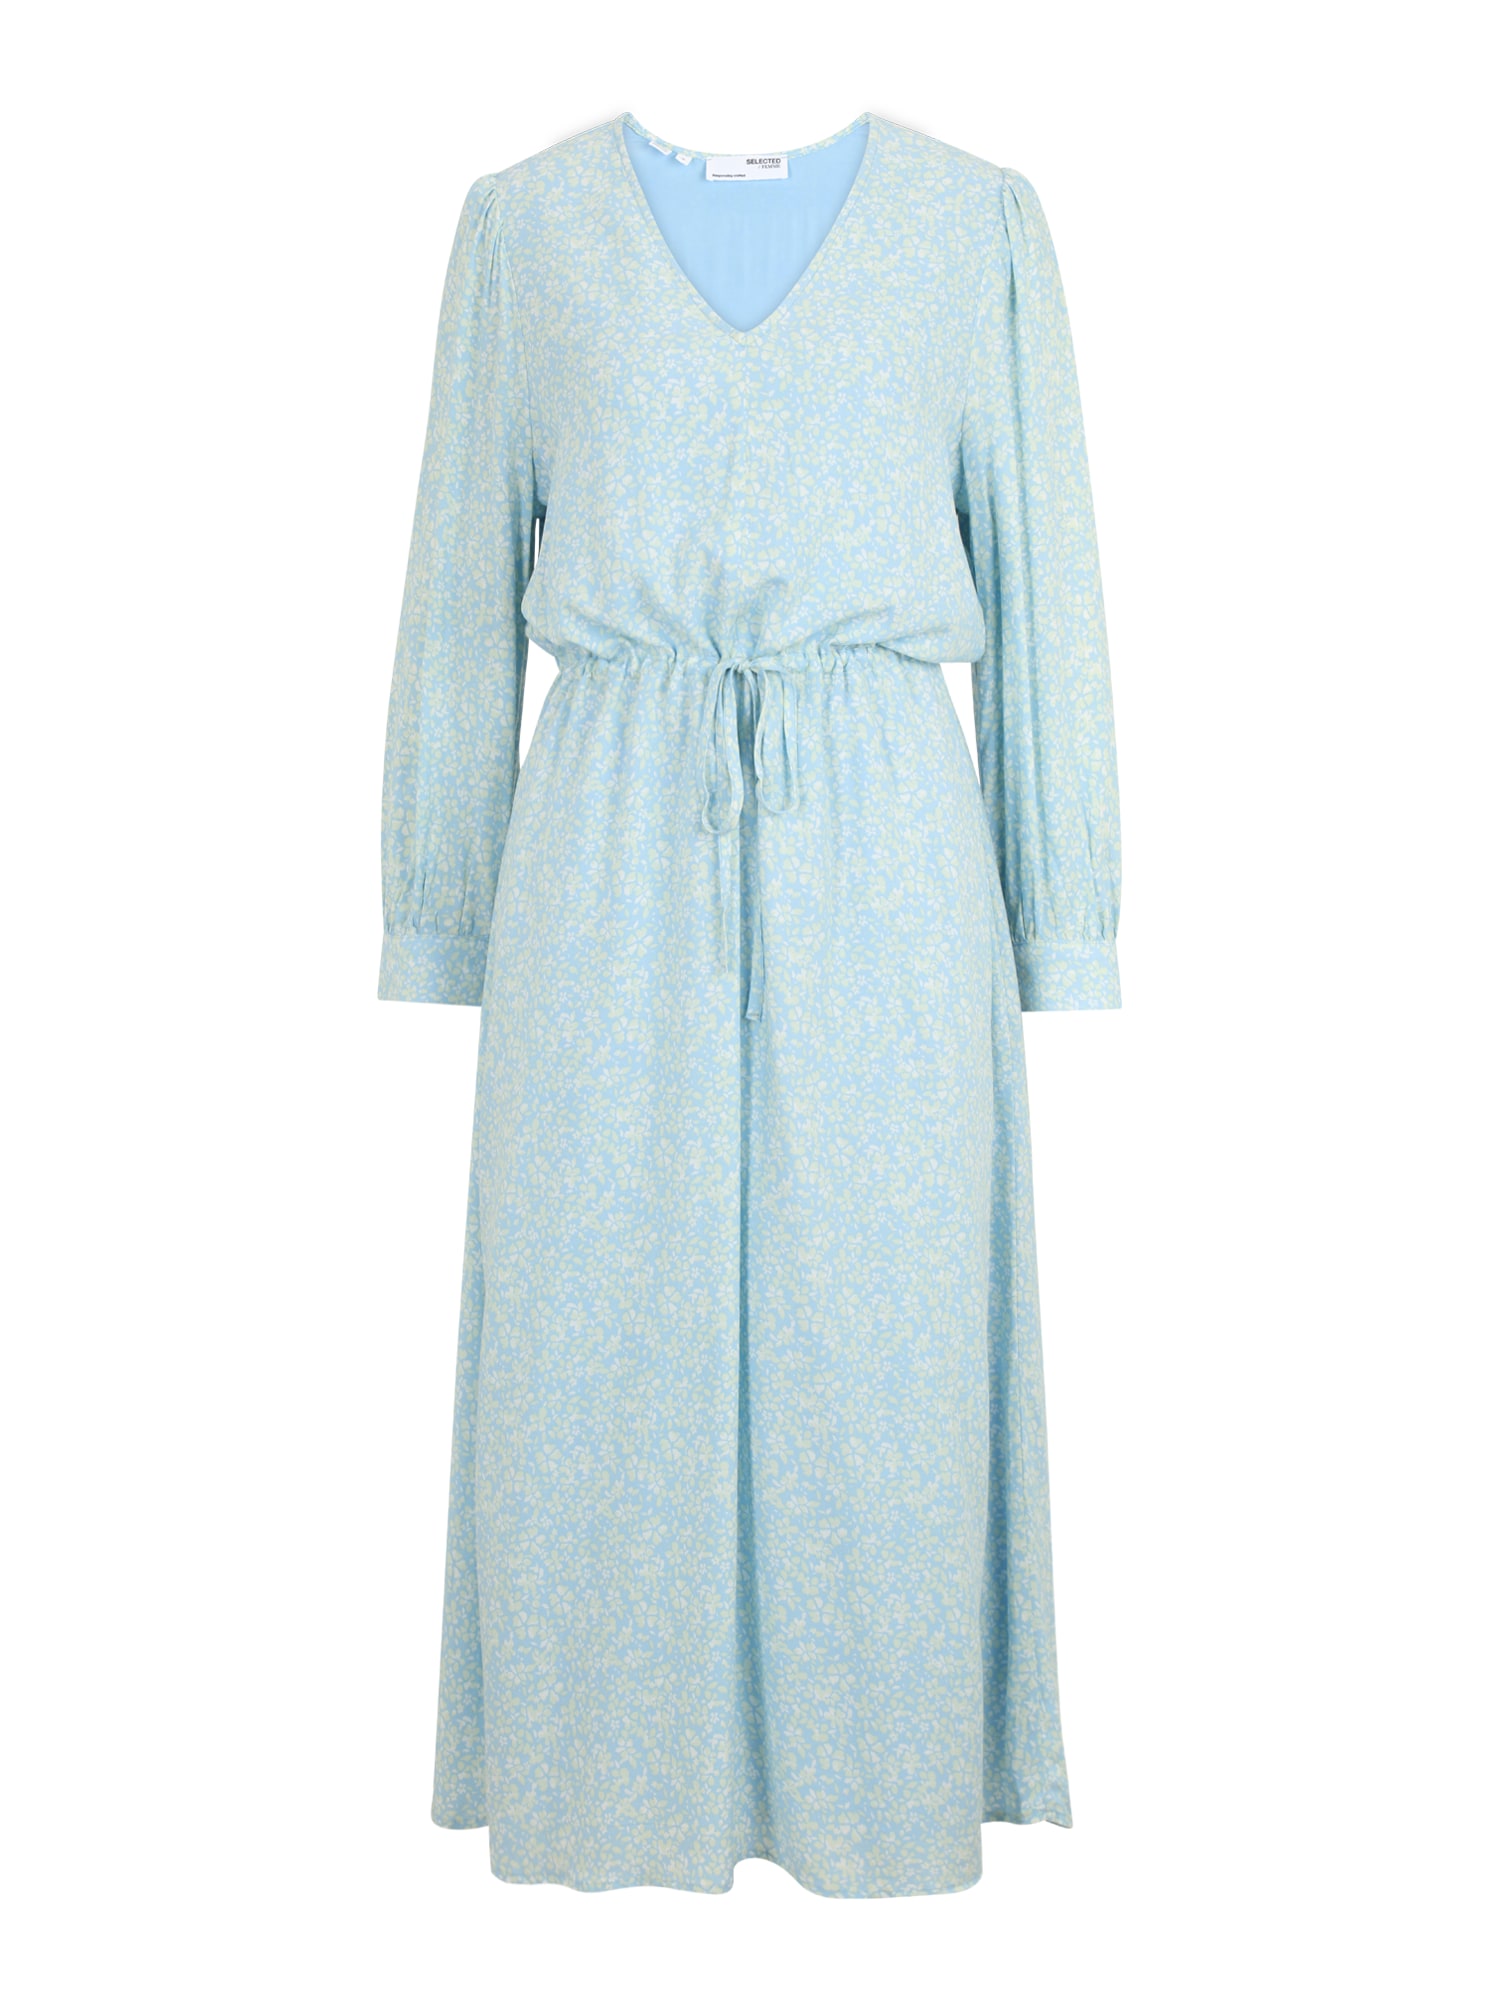 Selected Femme Tall Palaidinės tipo suknelė 'Brenda' balta / šviesiai mėlyna / balkšva